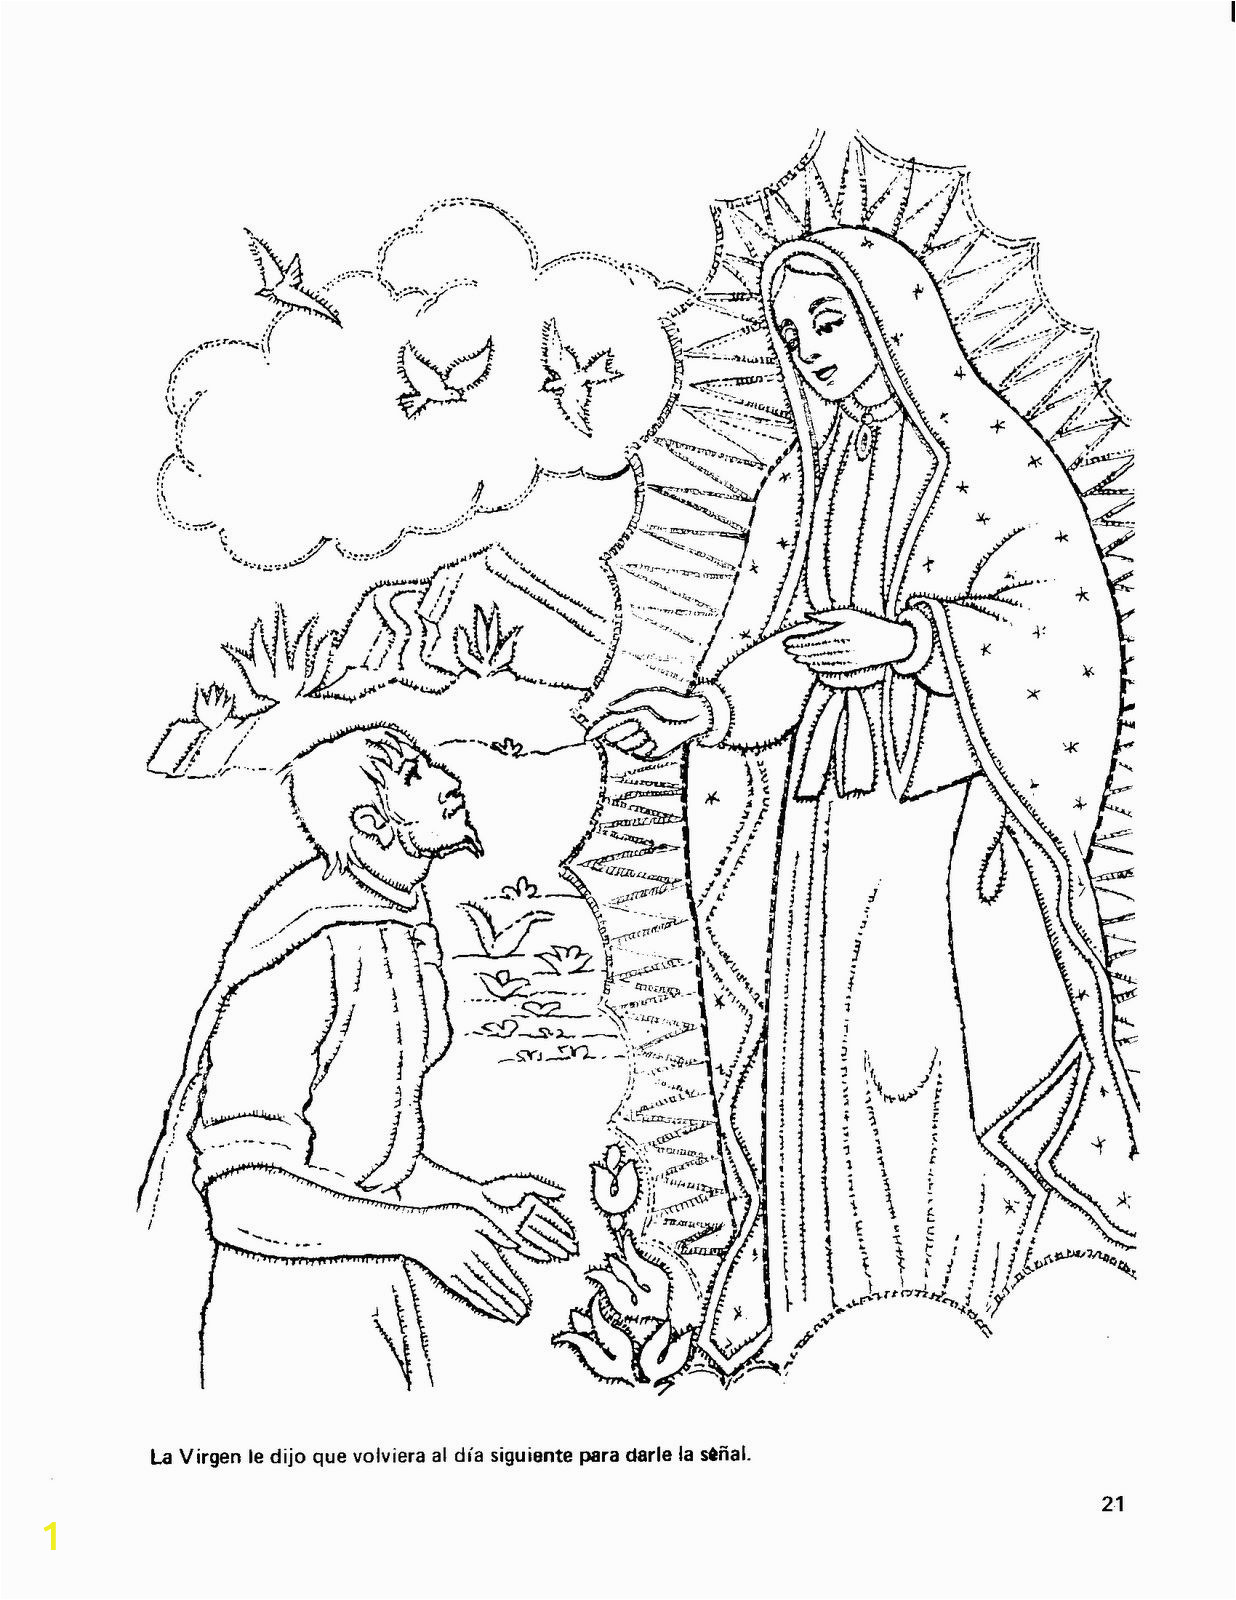 Coloring Pages Of La Virgen De Guadalupe Dibujos De La Virgen De Guadalupe Para Colorear Imagui